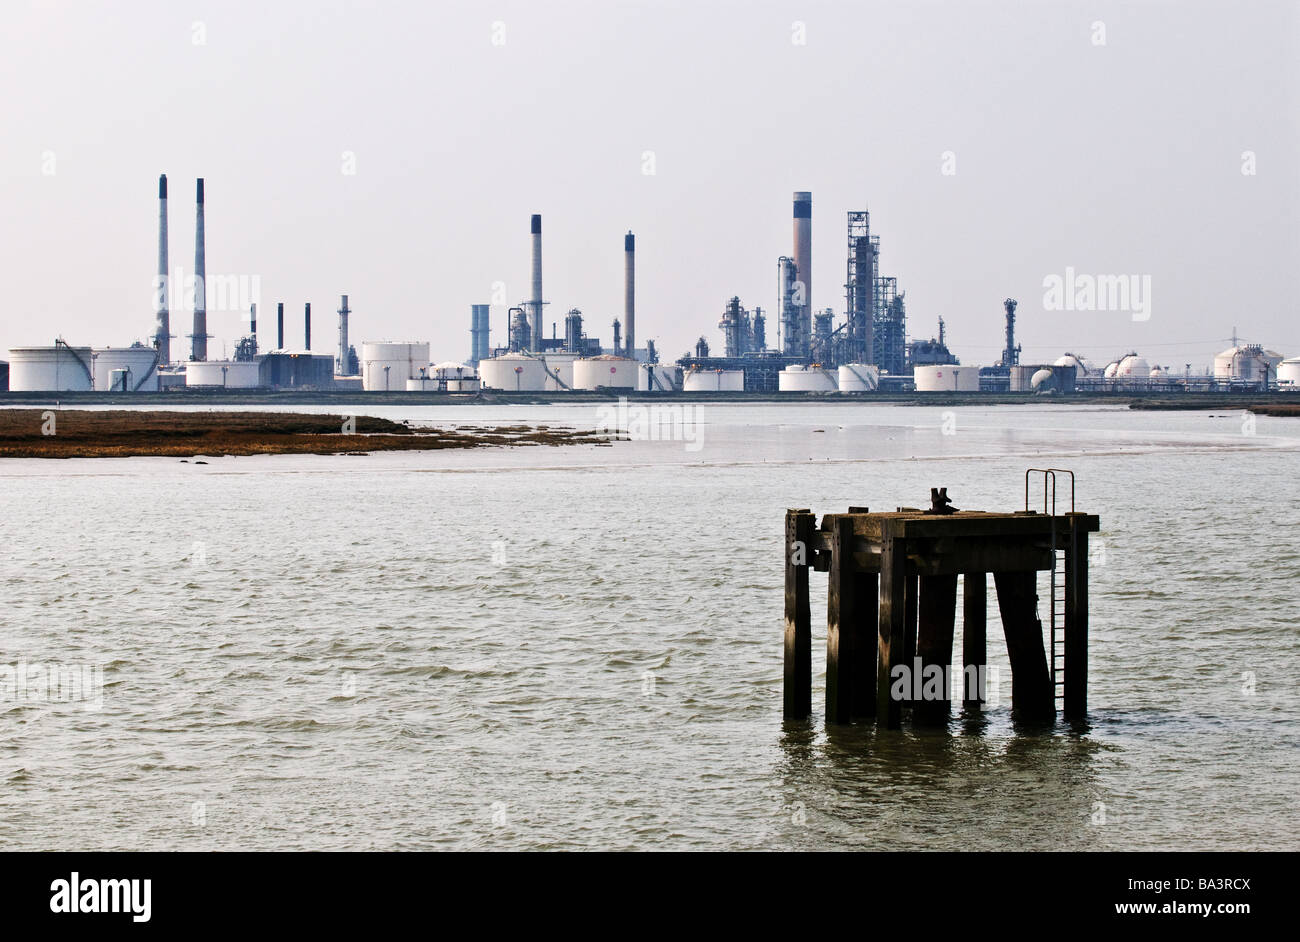 La refinería de petróleo de Coryton, en Essex, está fuera de servicio. Foto de stock